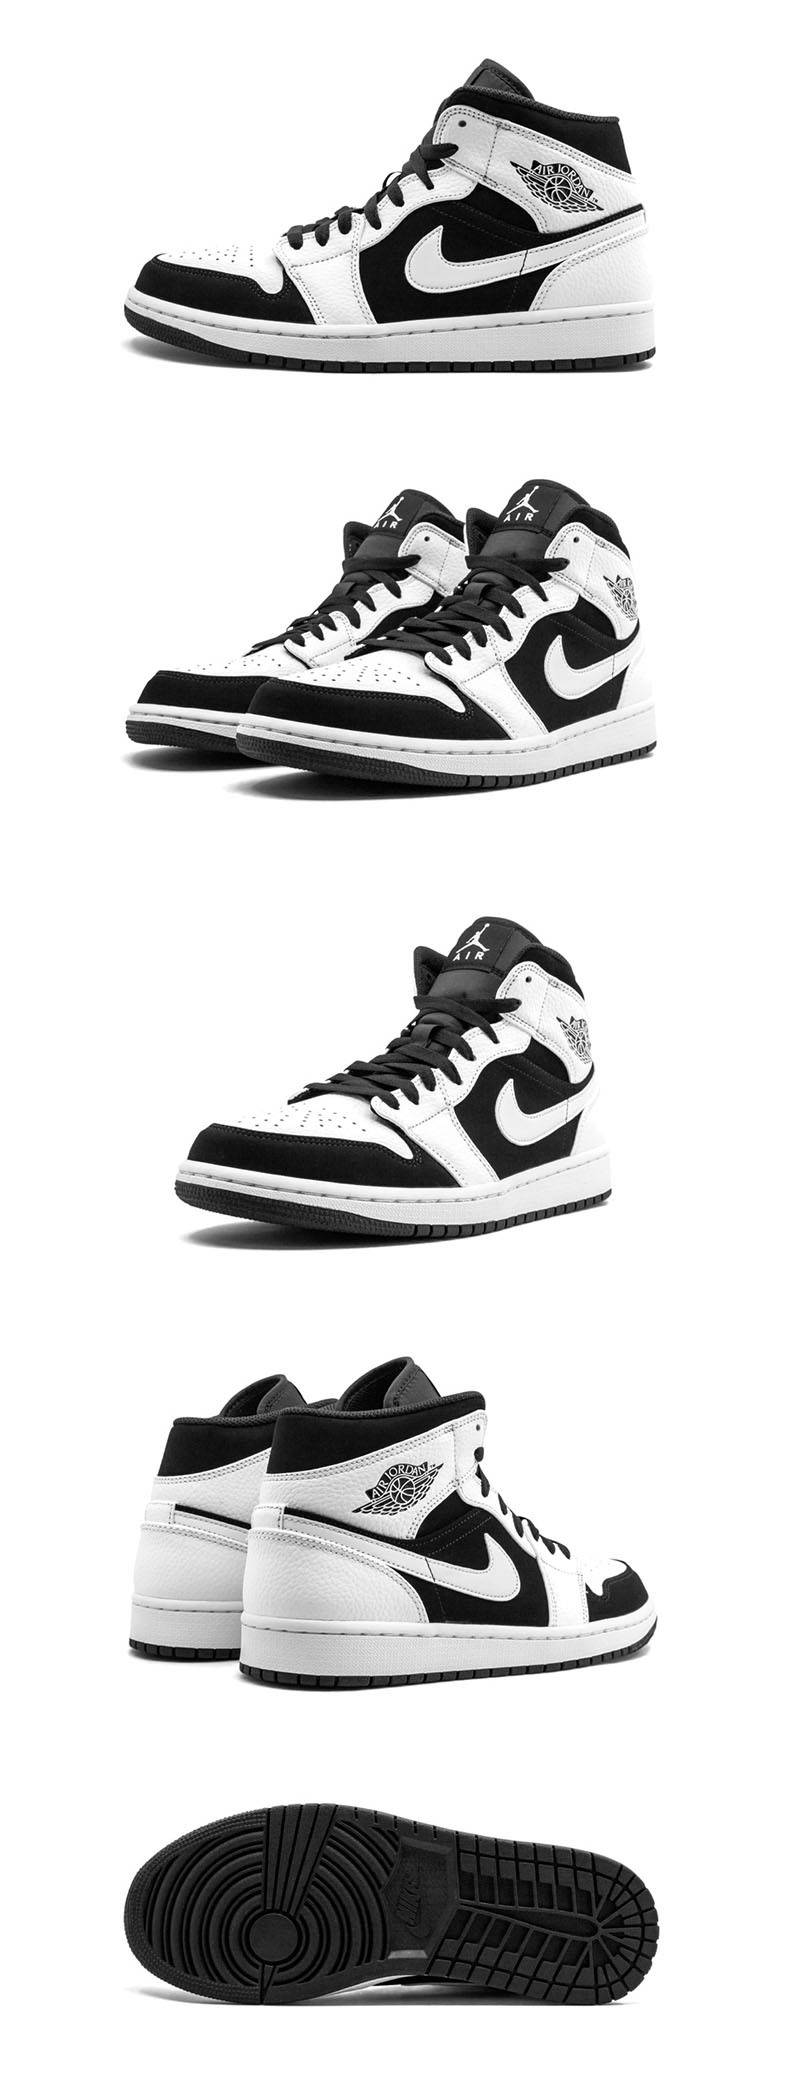 篮球鞋, 球鞋, Air Jordan 1 Mid, Air Jordan 1 - 乔丹 Air Jordan 1 MID 中帮黑白熊猫 篮球鞋 554724-113